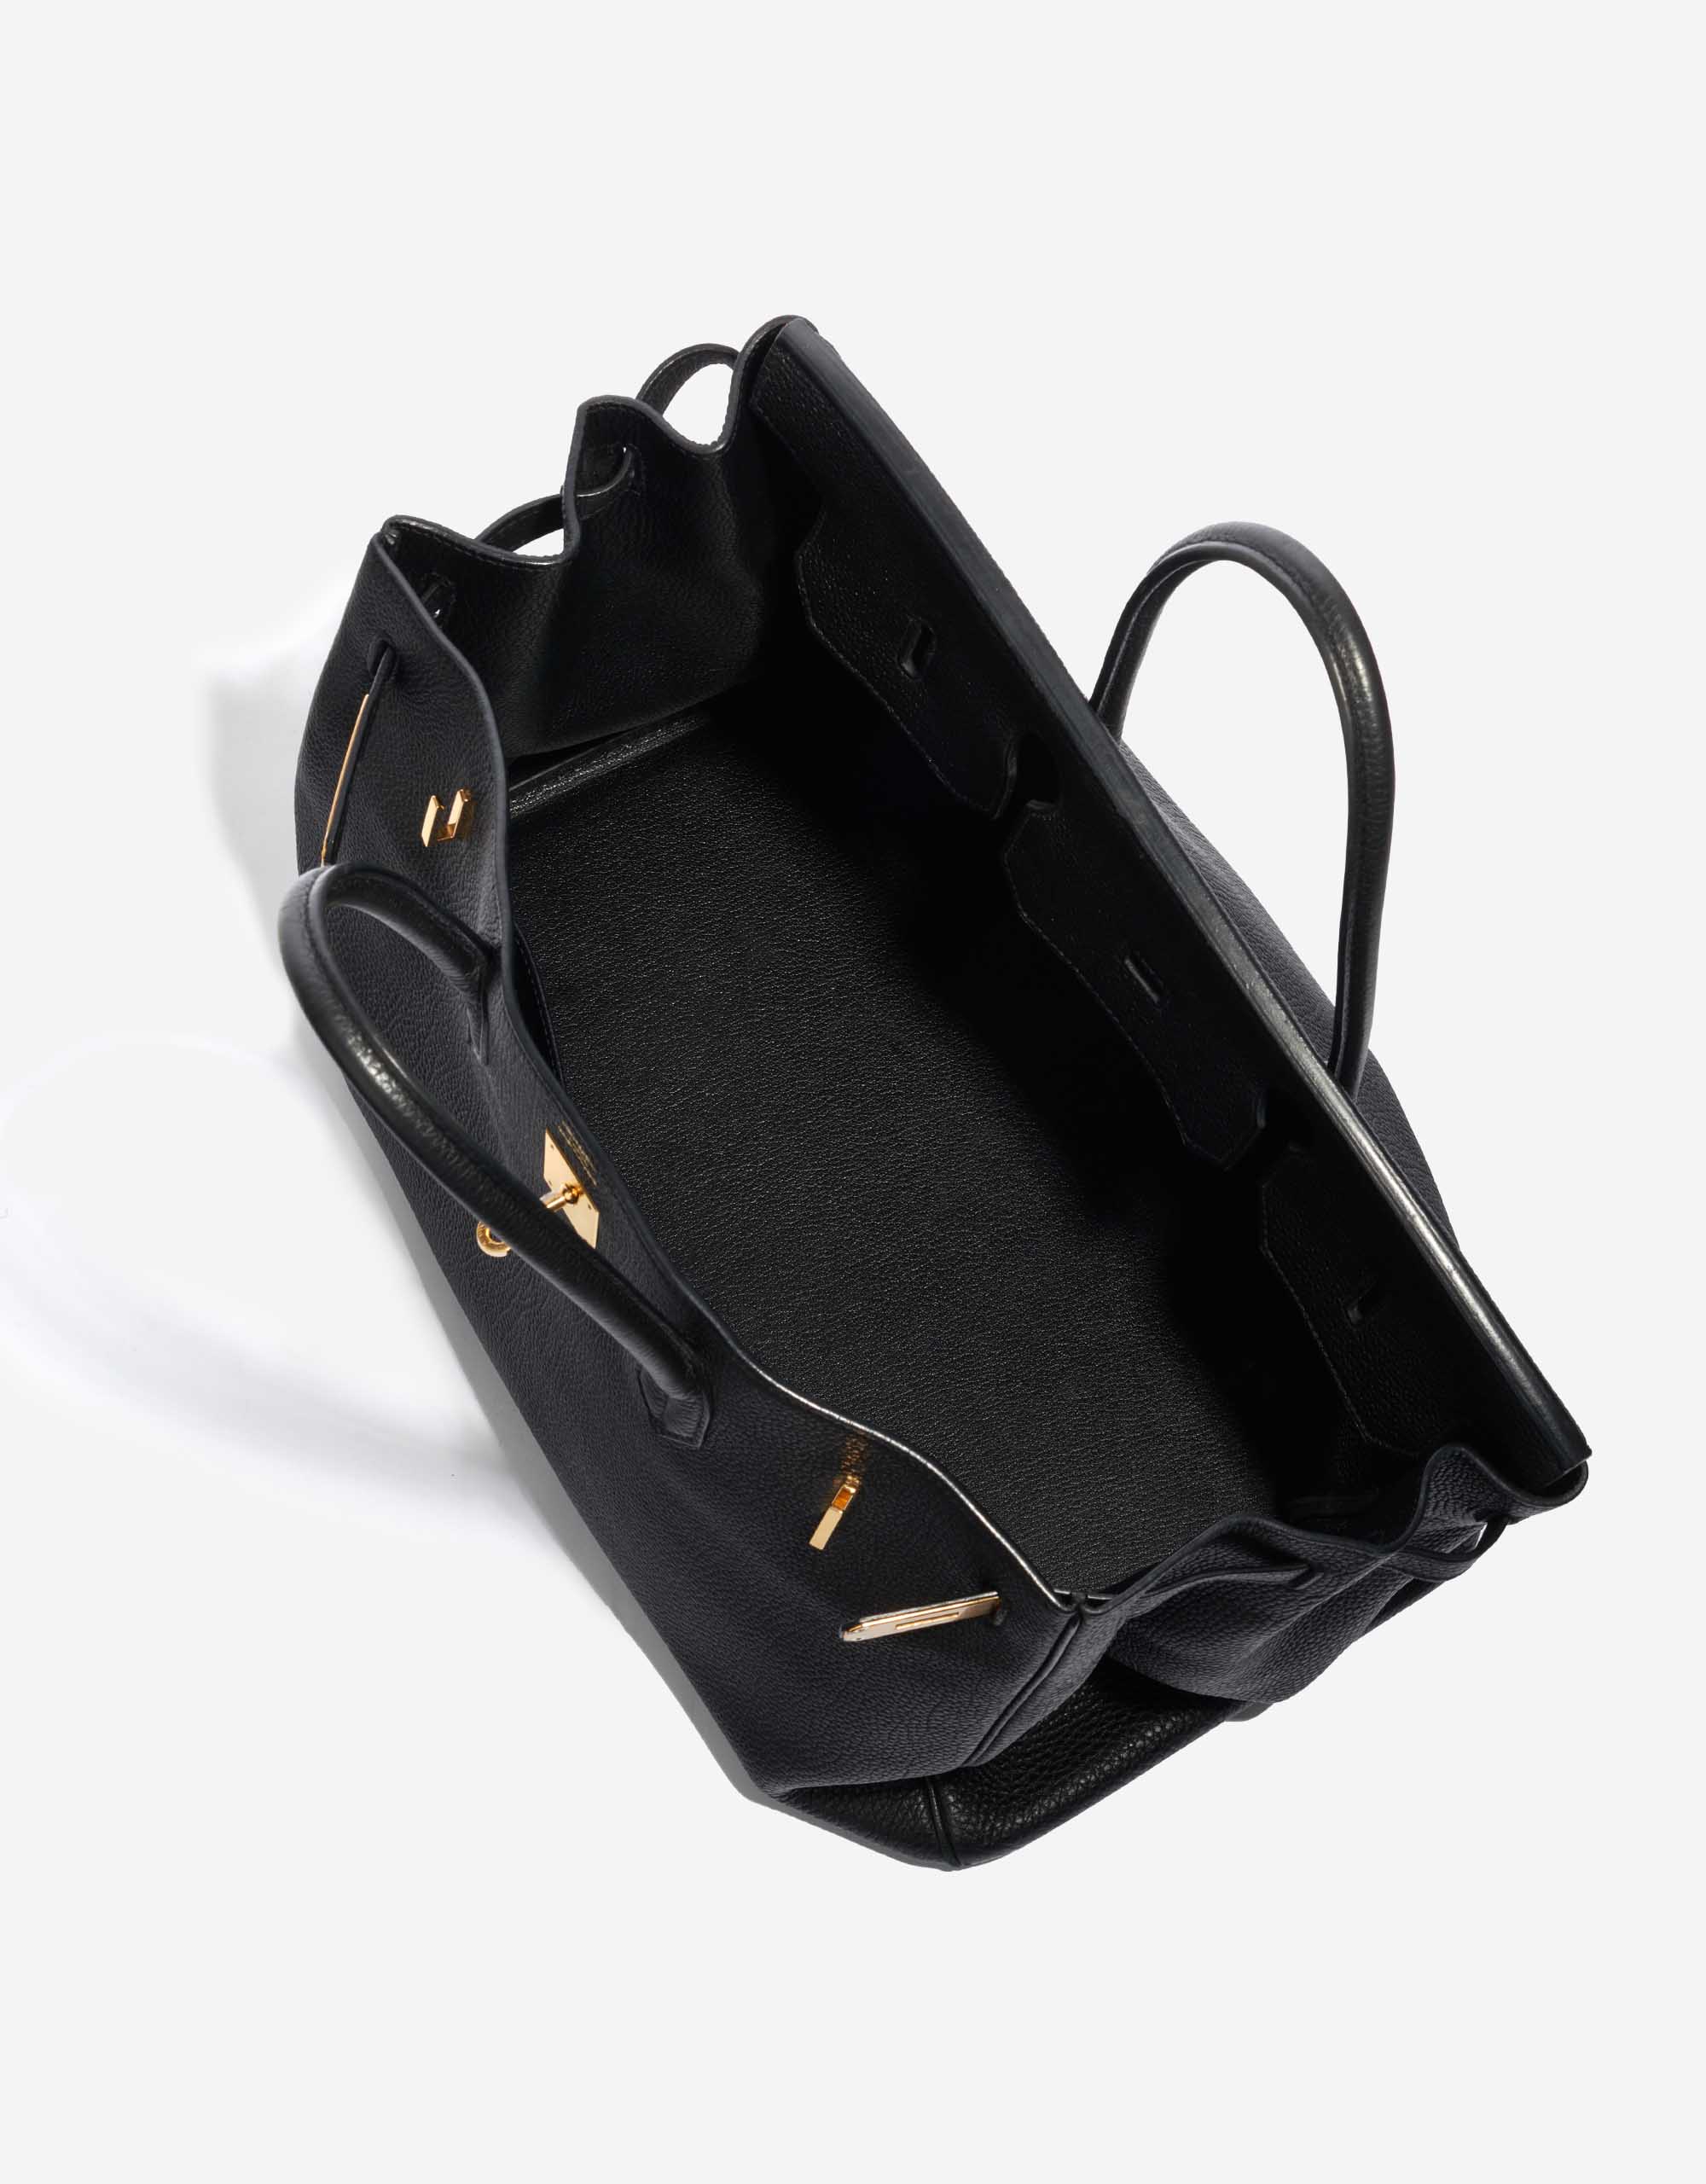 Sac d'occasion Hermès Birkin 40 Togo Noir Noir Intérieur | Vendez votre sac de créateur sur Saclab.com